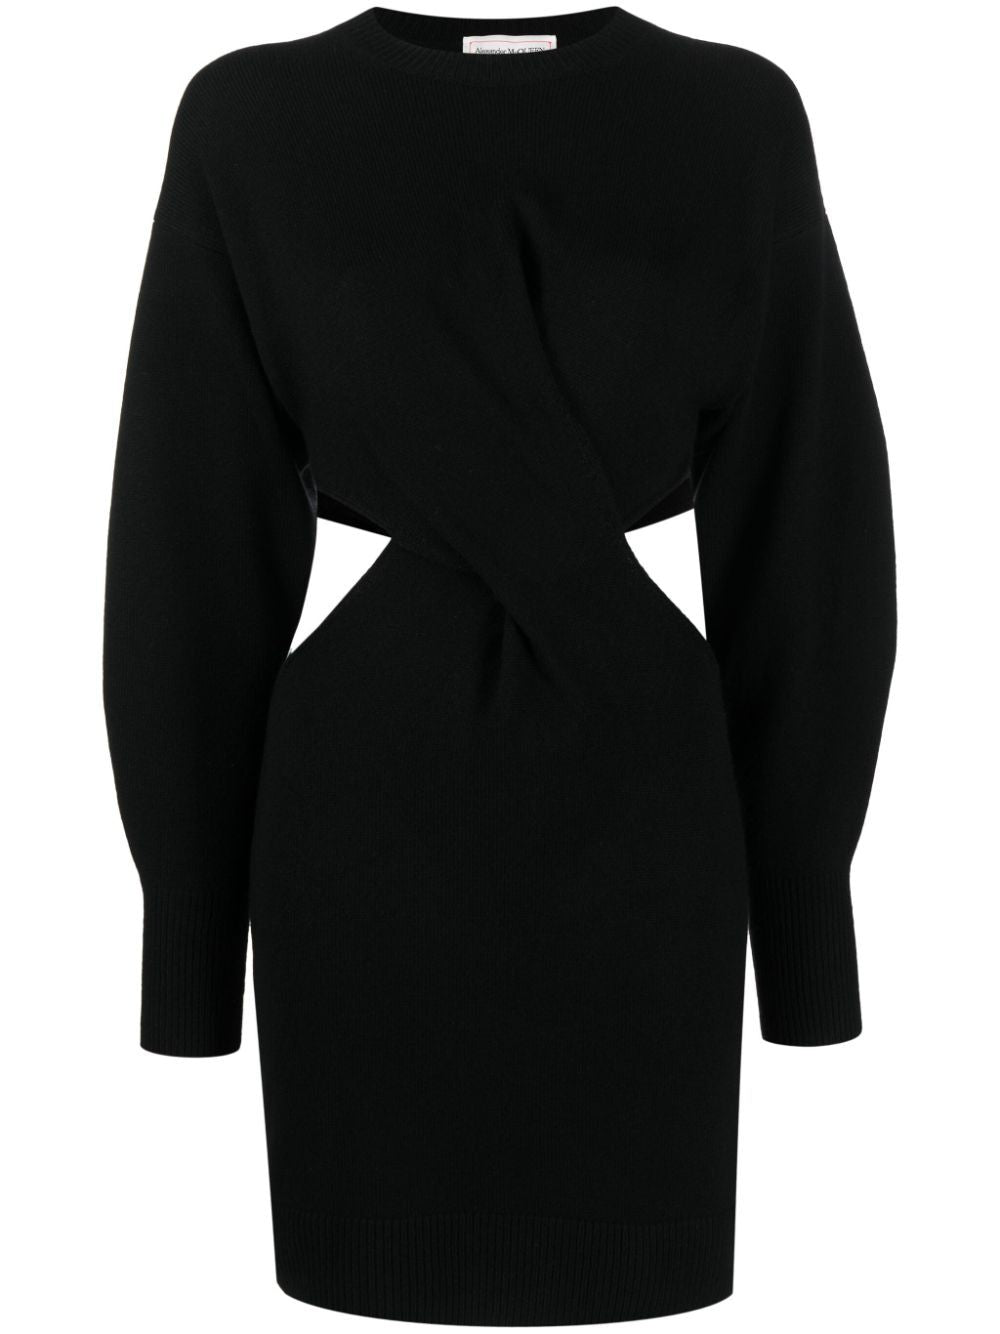 Đầm nhỏ đen len dành cho phụ nữ mùa Đông FW23